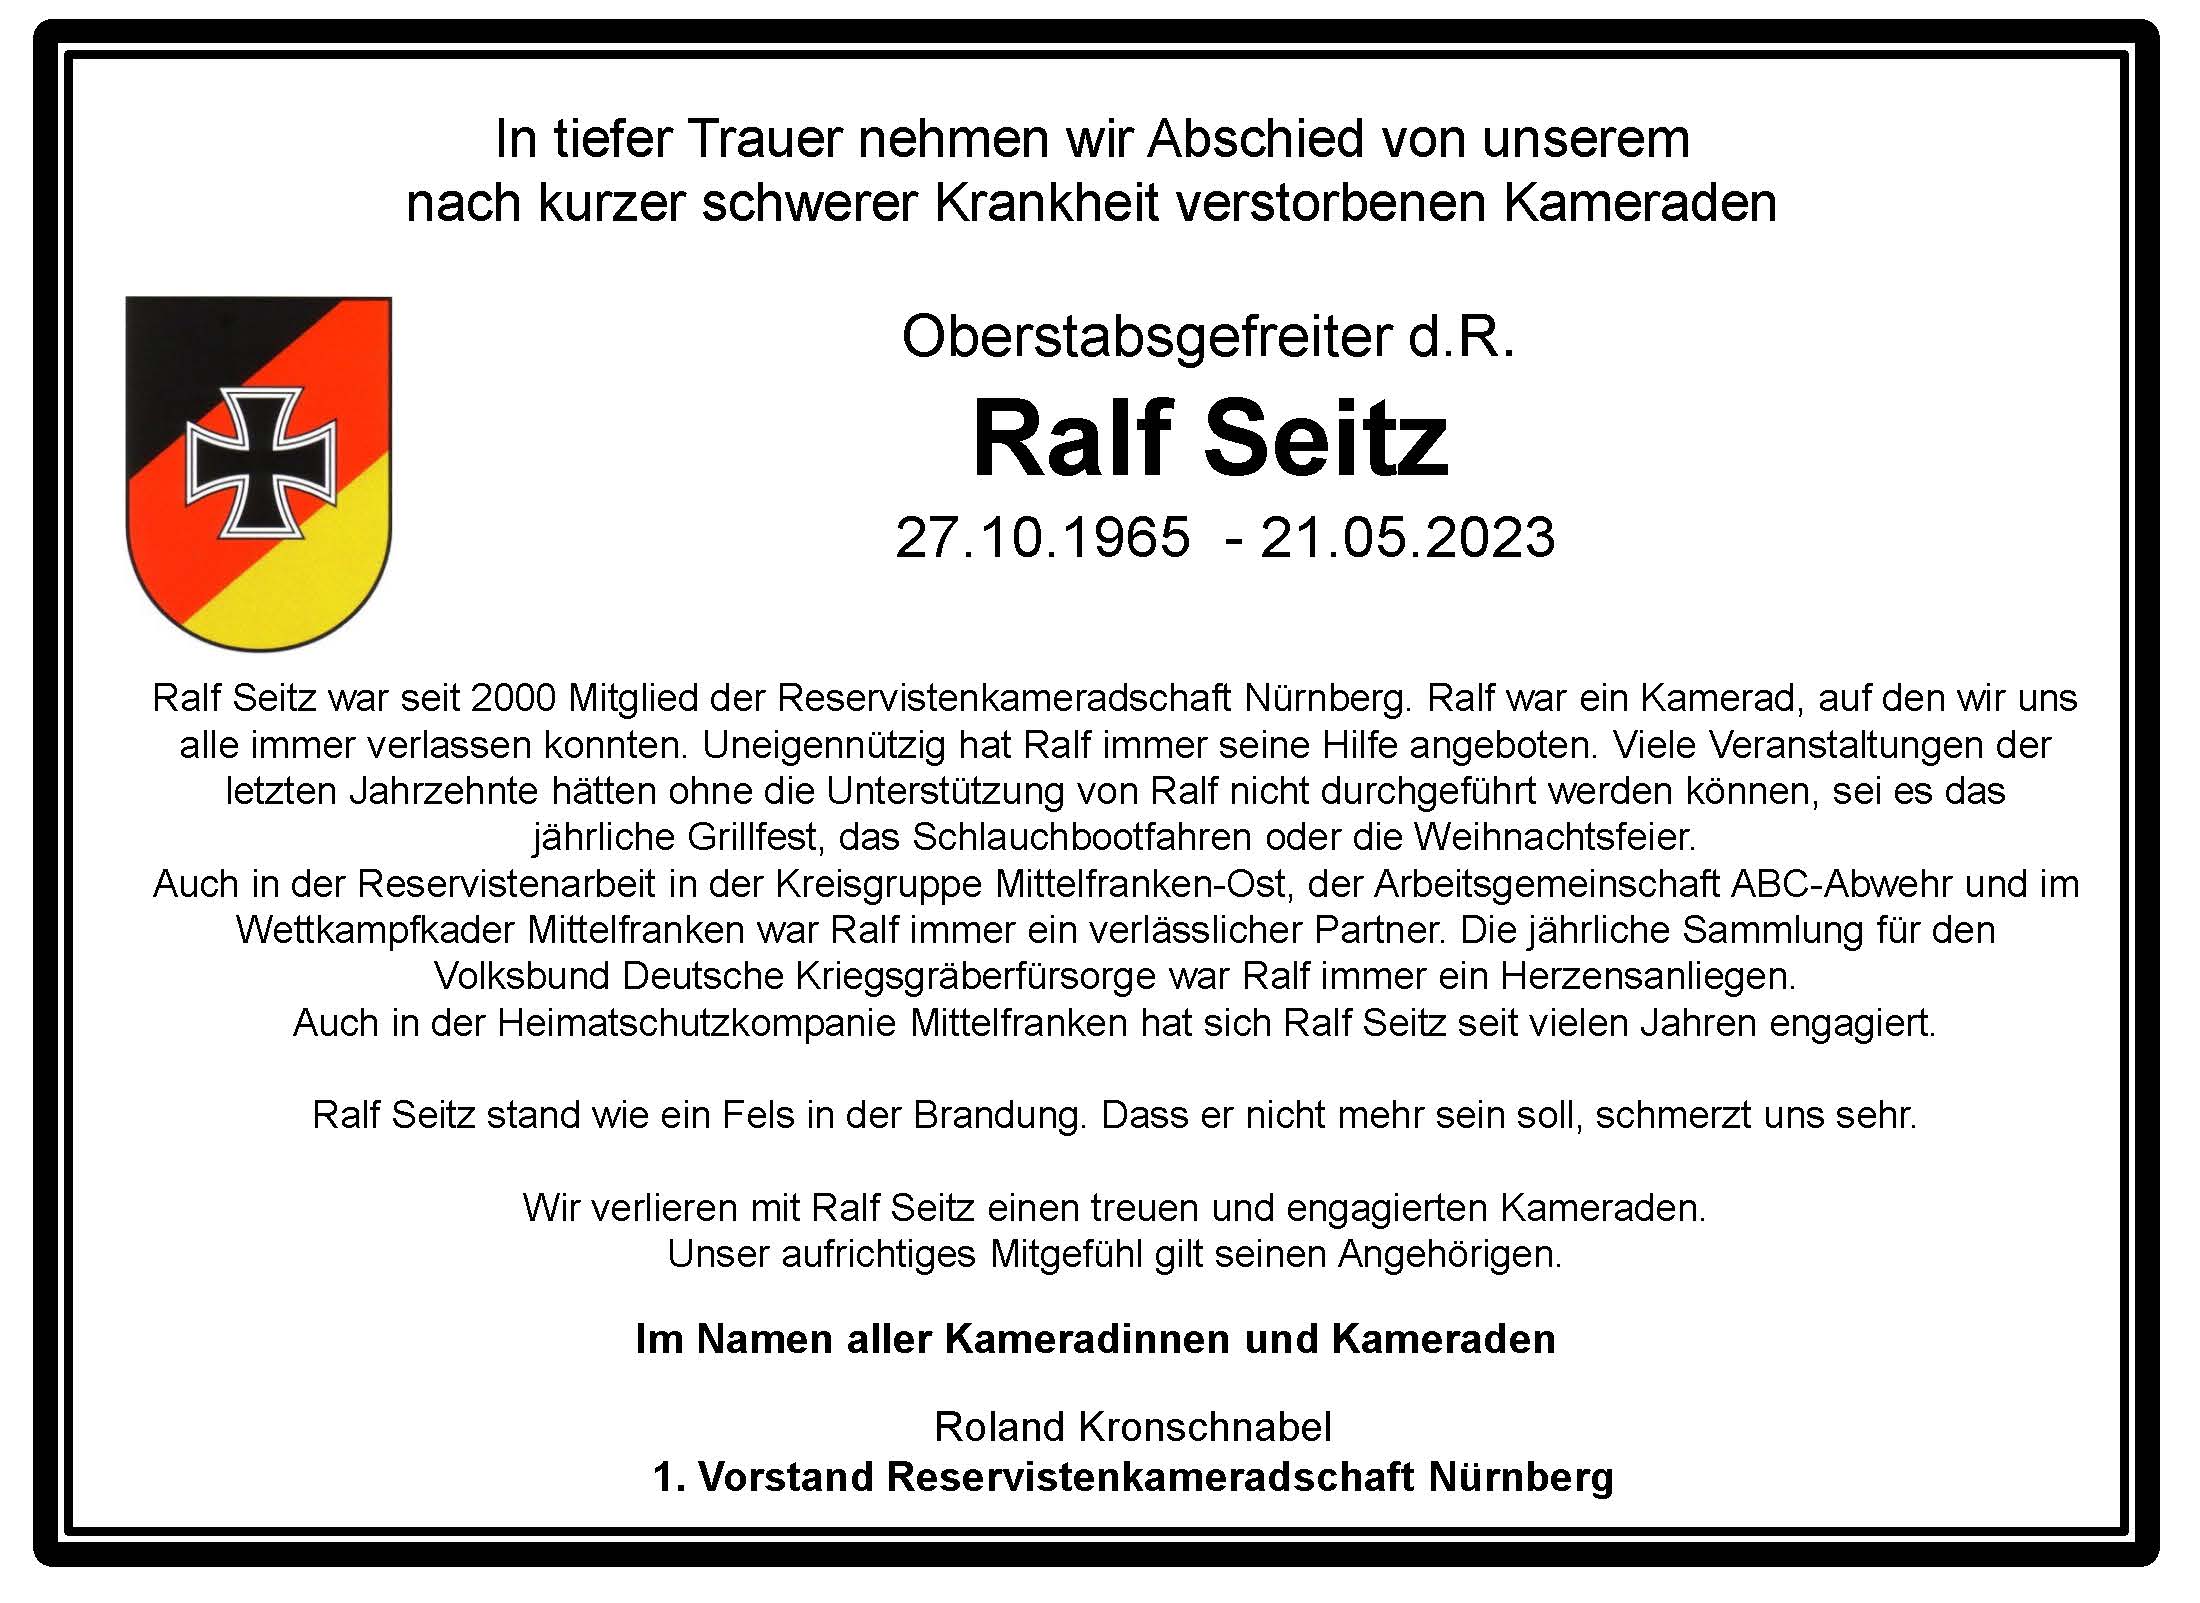 Ralf Seitz